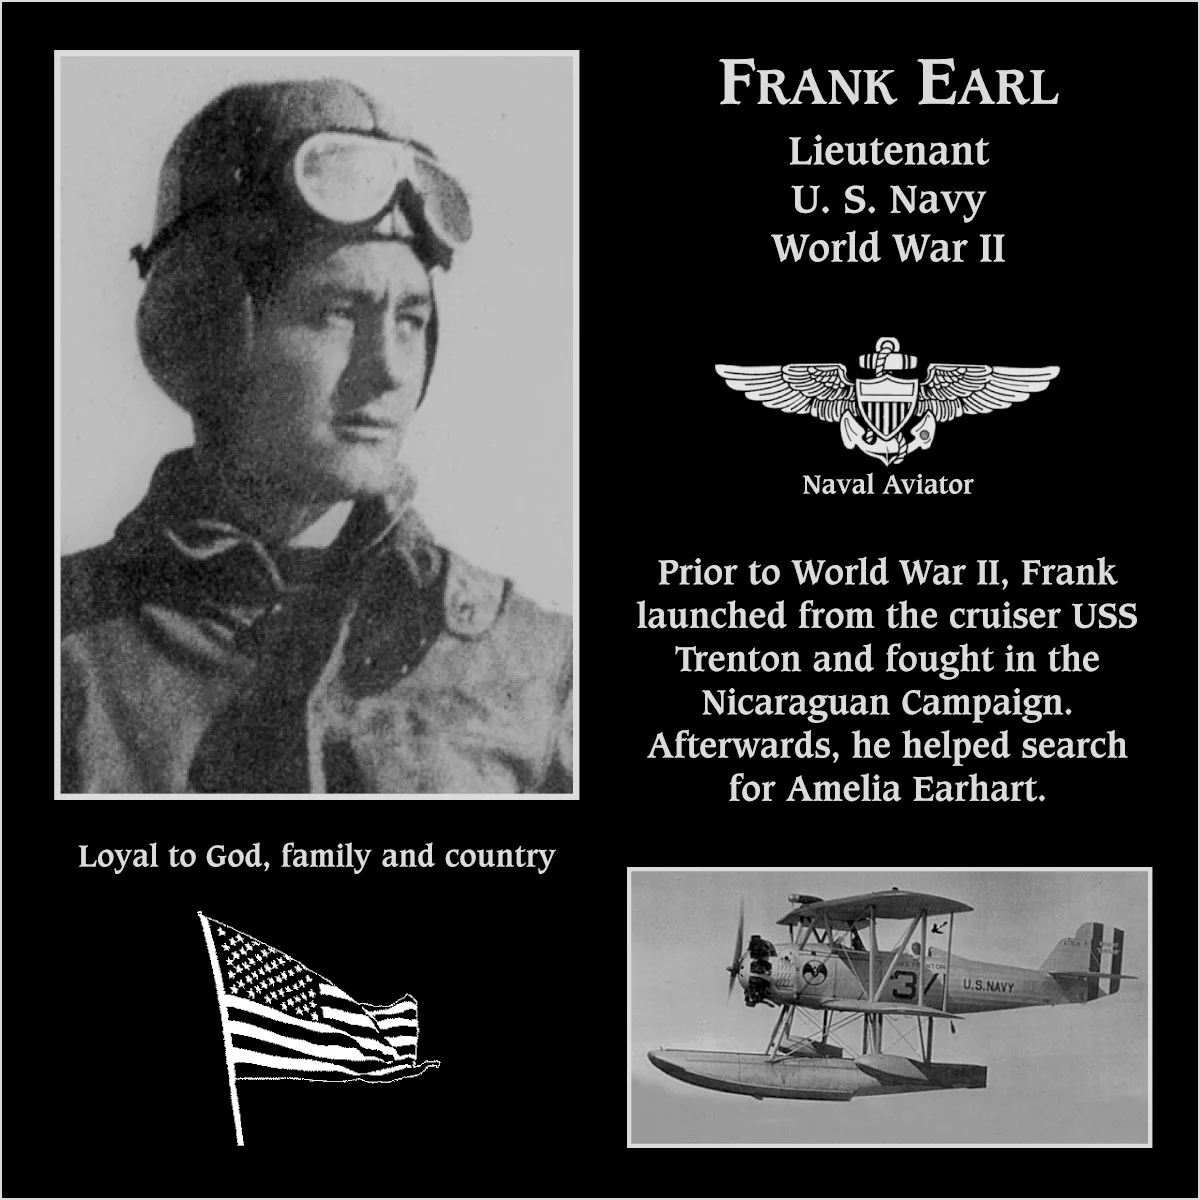 Frank Earl